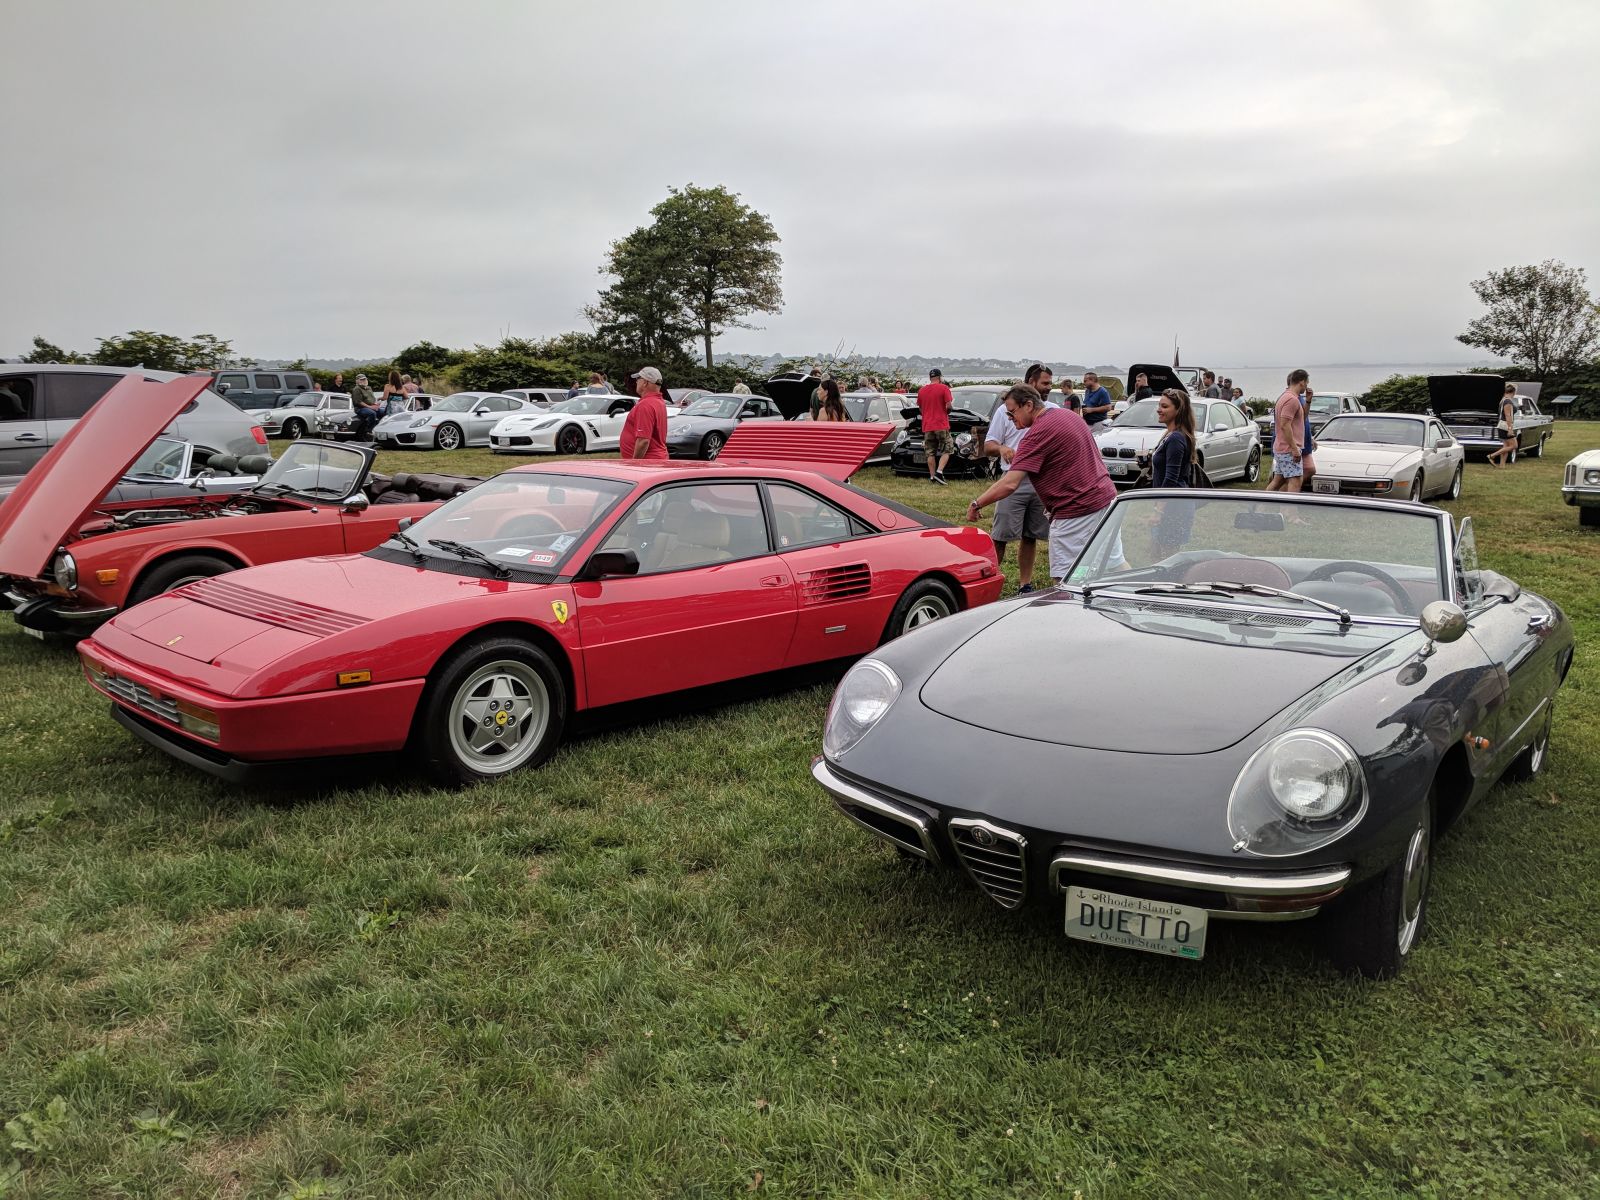 An Alfa and a Ferrari